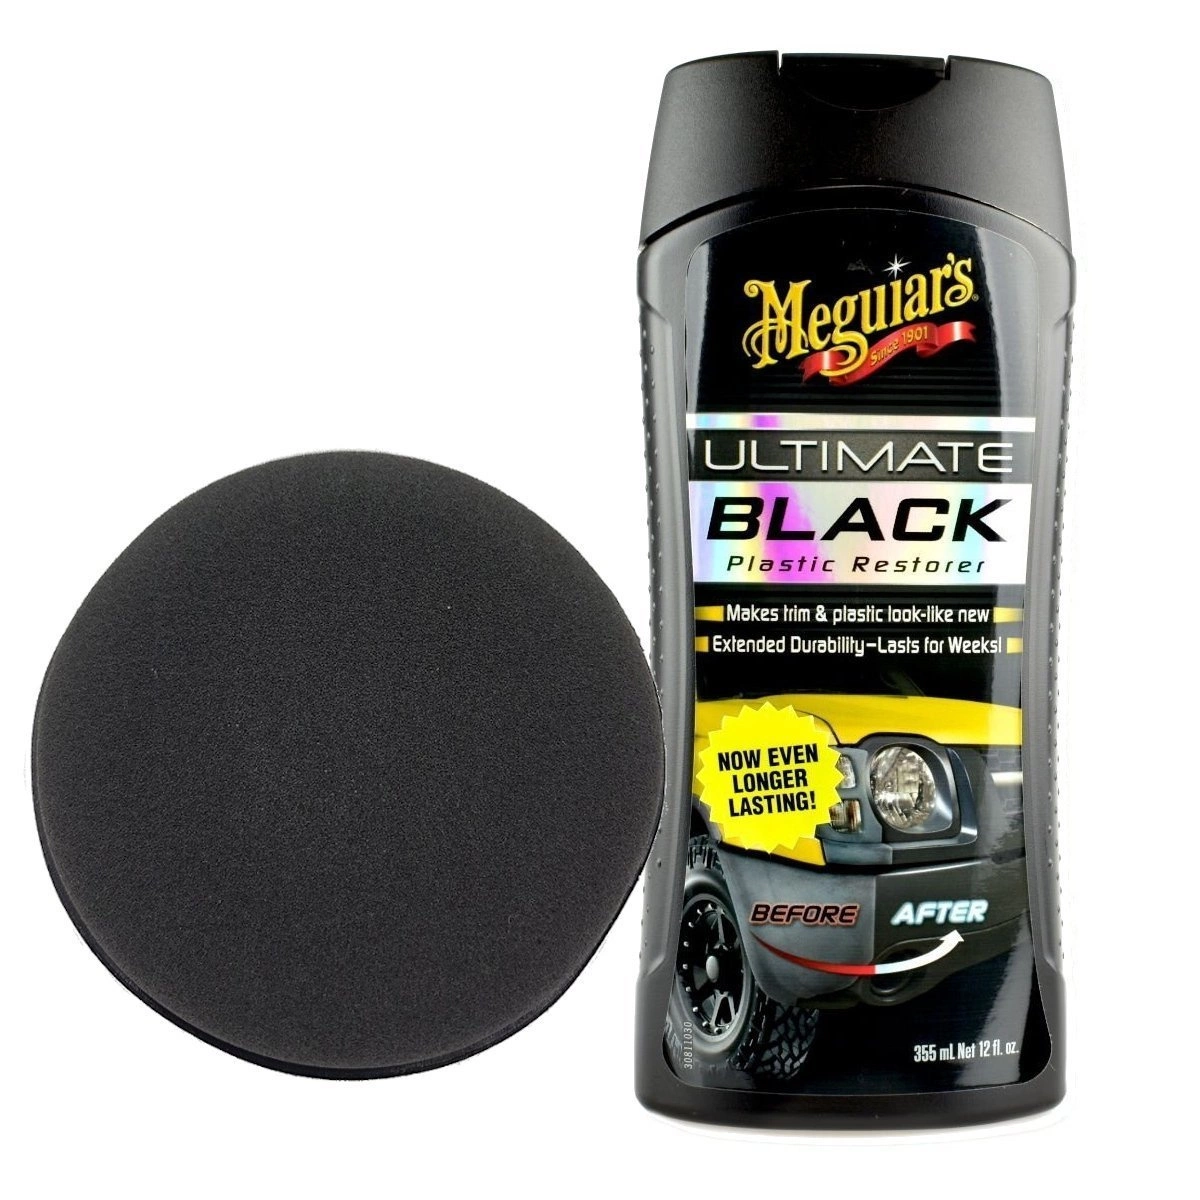 Zestaw: Meguiars Ultimate Black Plastic Restorer żel do plastików 355ml  aplikator • autokosmetyki •